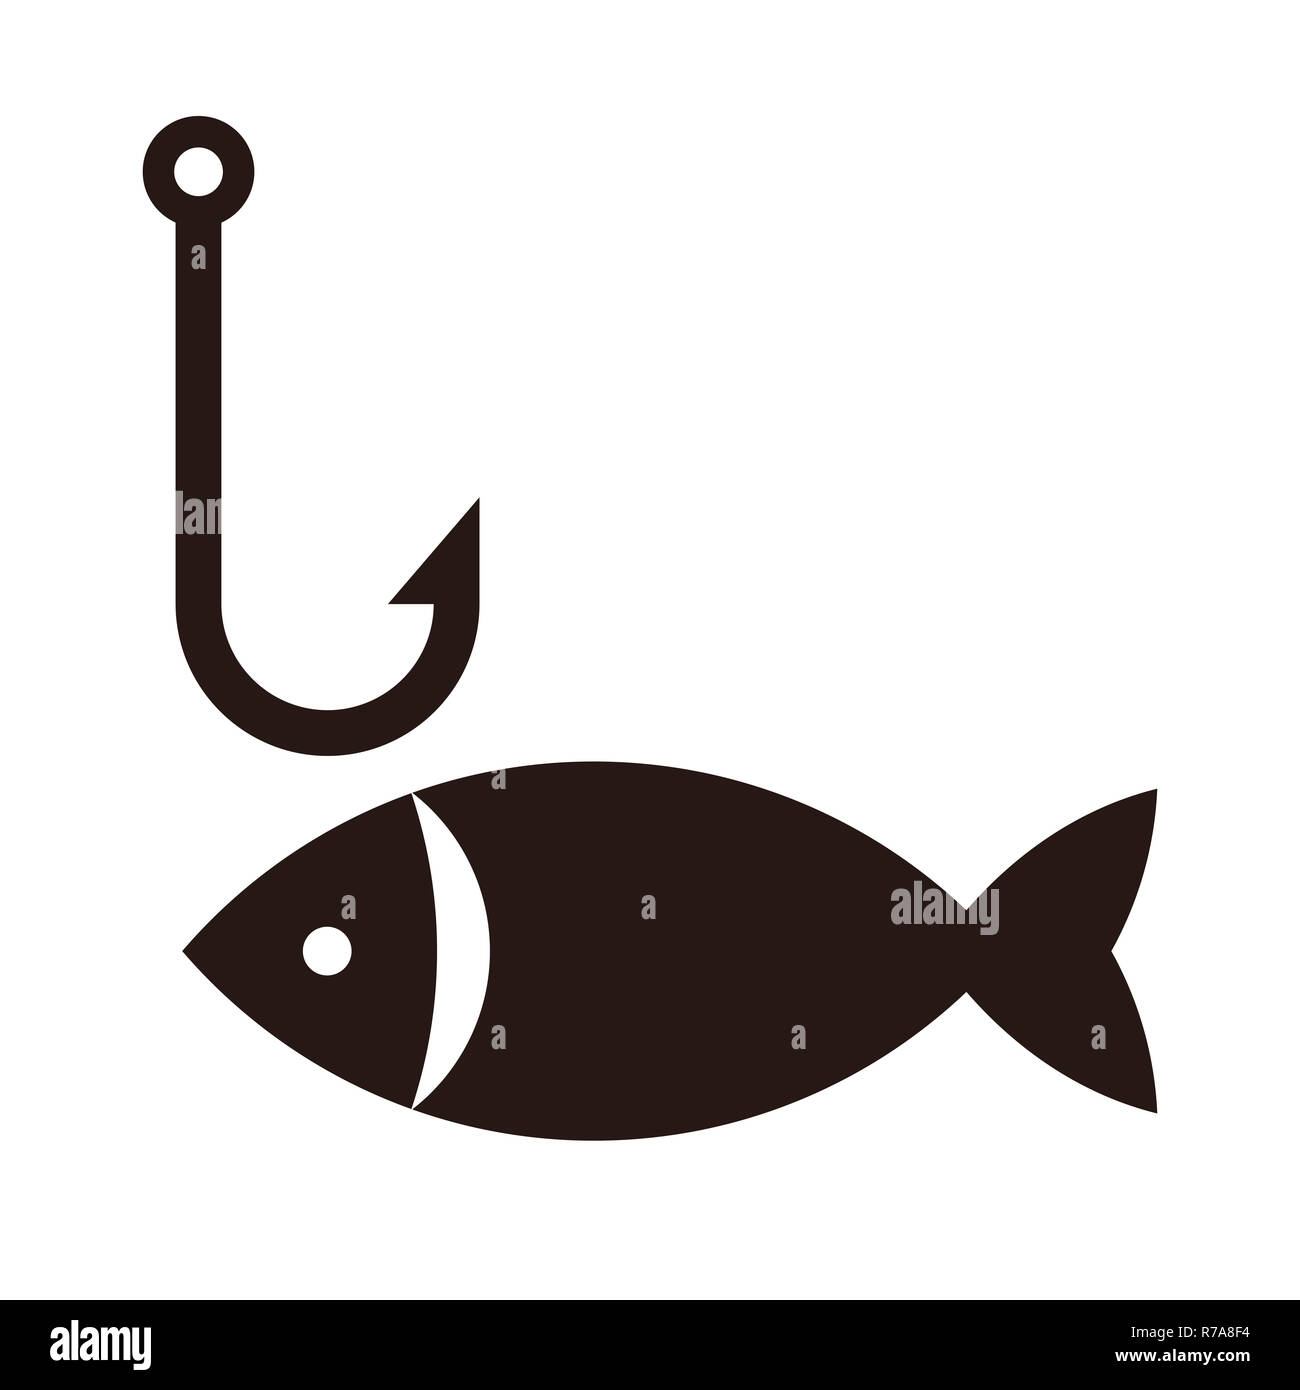 Fishing hook and fish. Fishing symbol isolated on white background Stock  Photo - Alamy